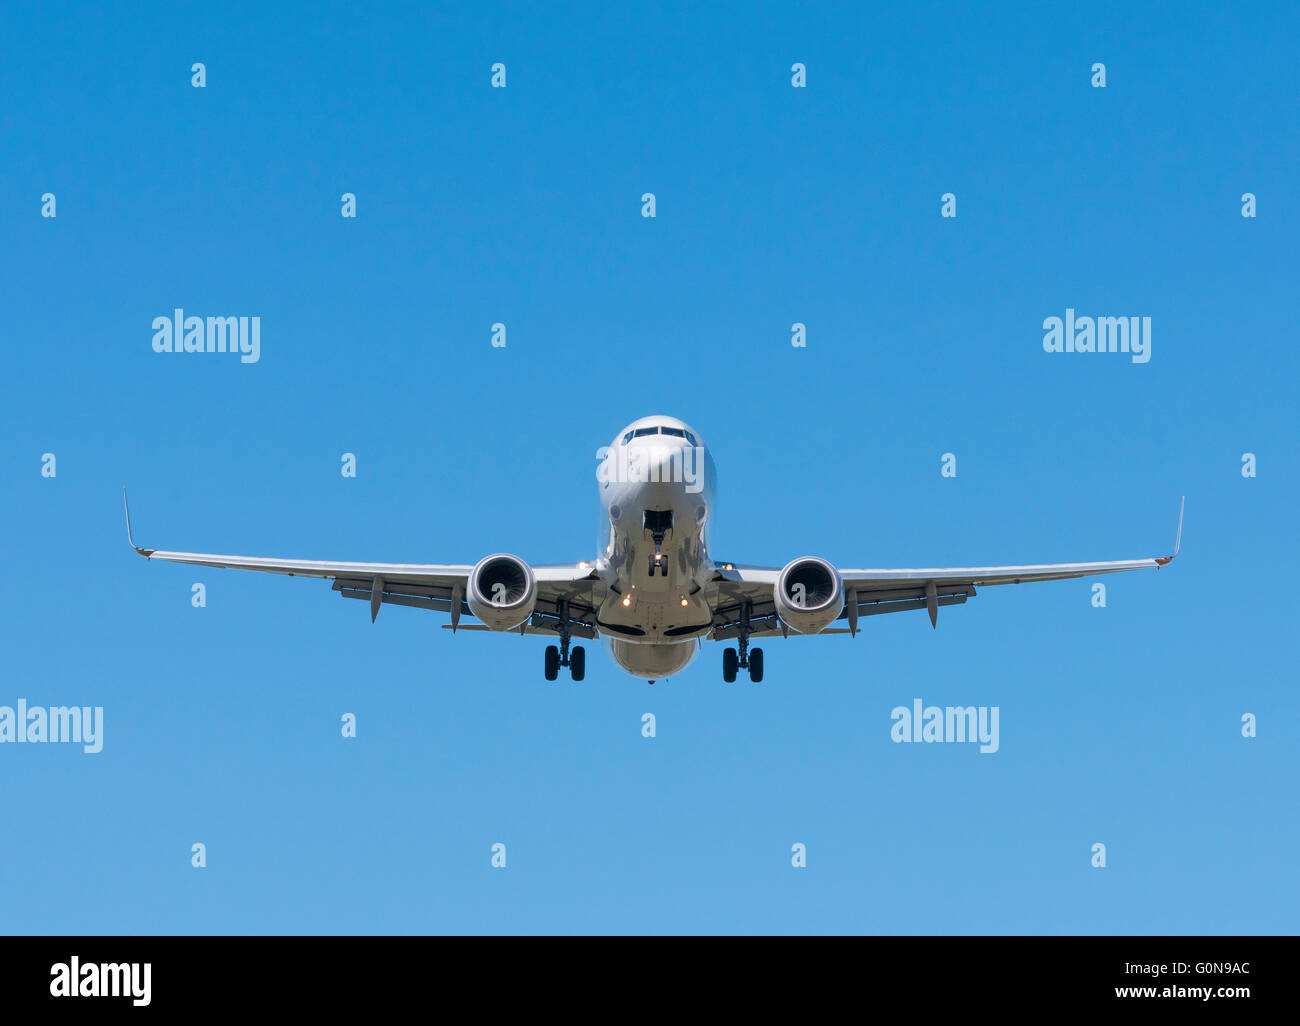 El aterrizaje del avión de pasajeros Jet Foto de stock